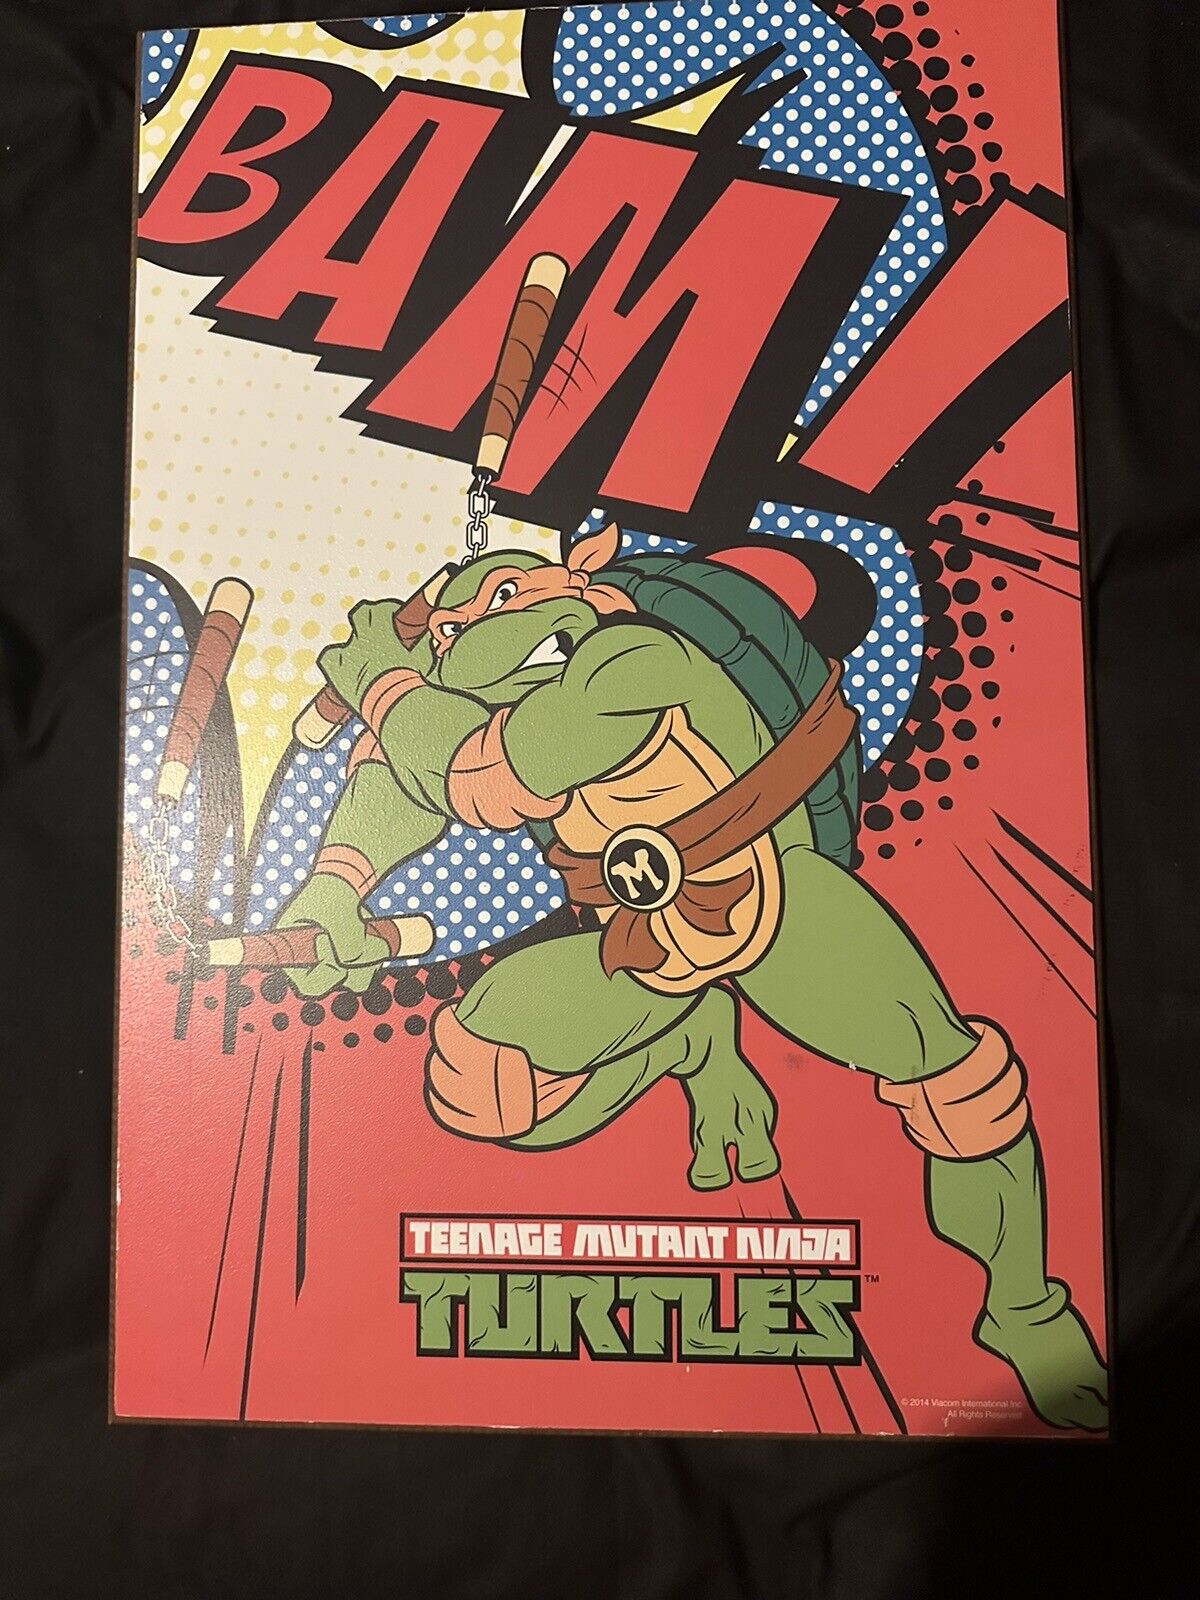 NEW RARE VINTAGE STYLE Teenage Mutant Ninja Turtles TMNT Wood Wall Plaque 13x19\